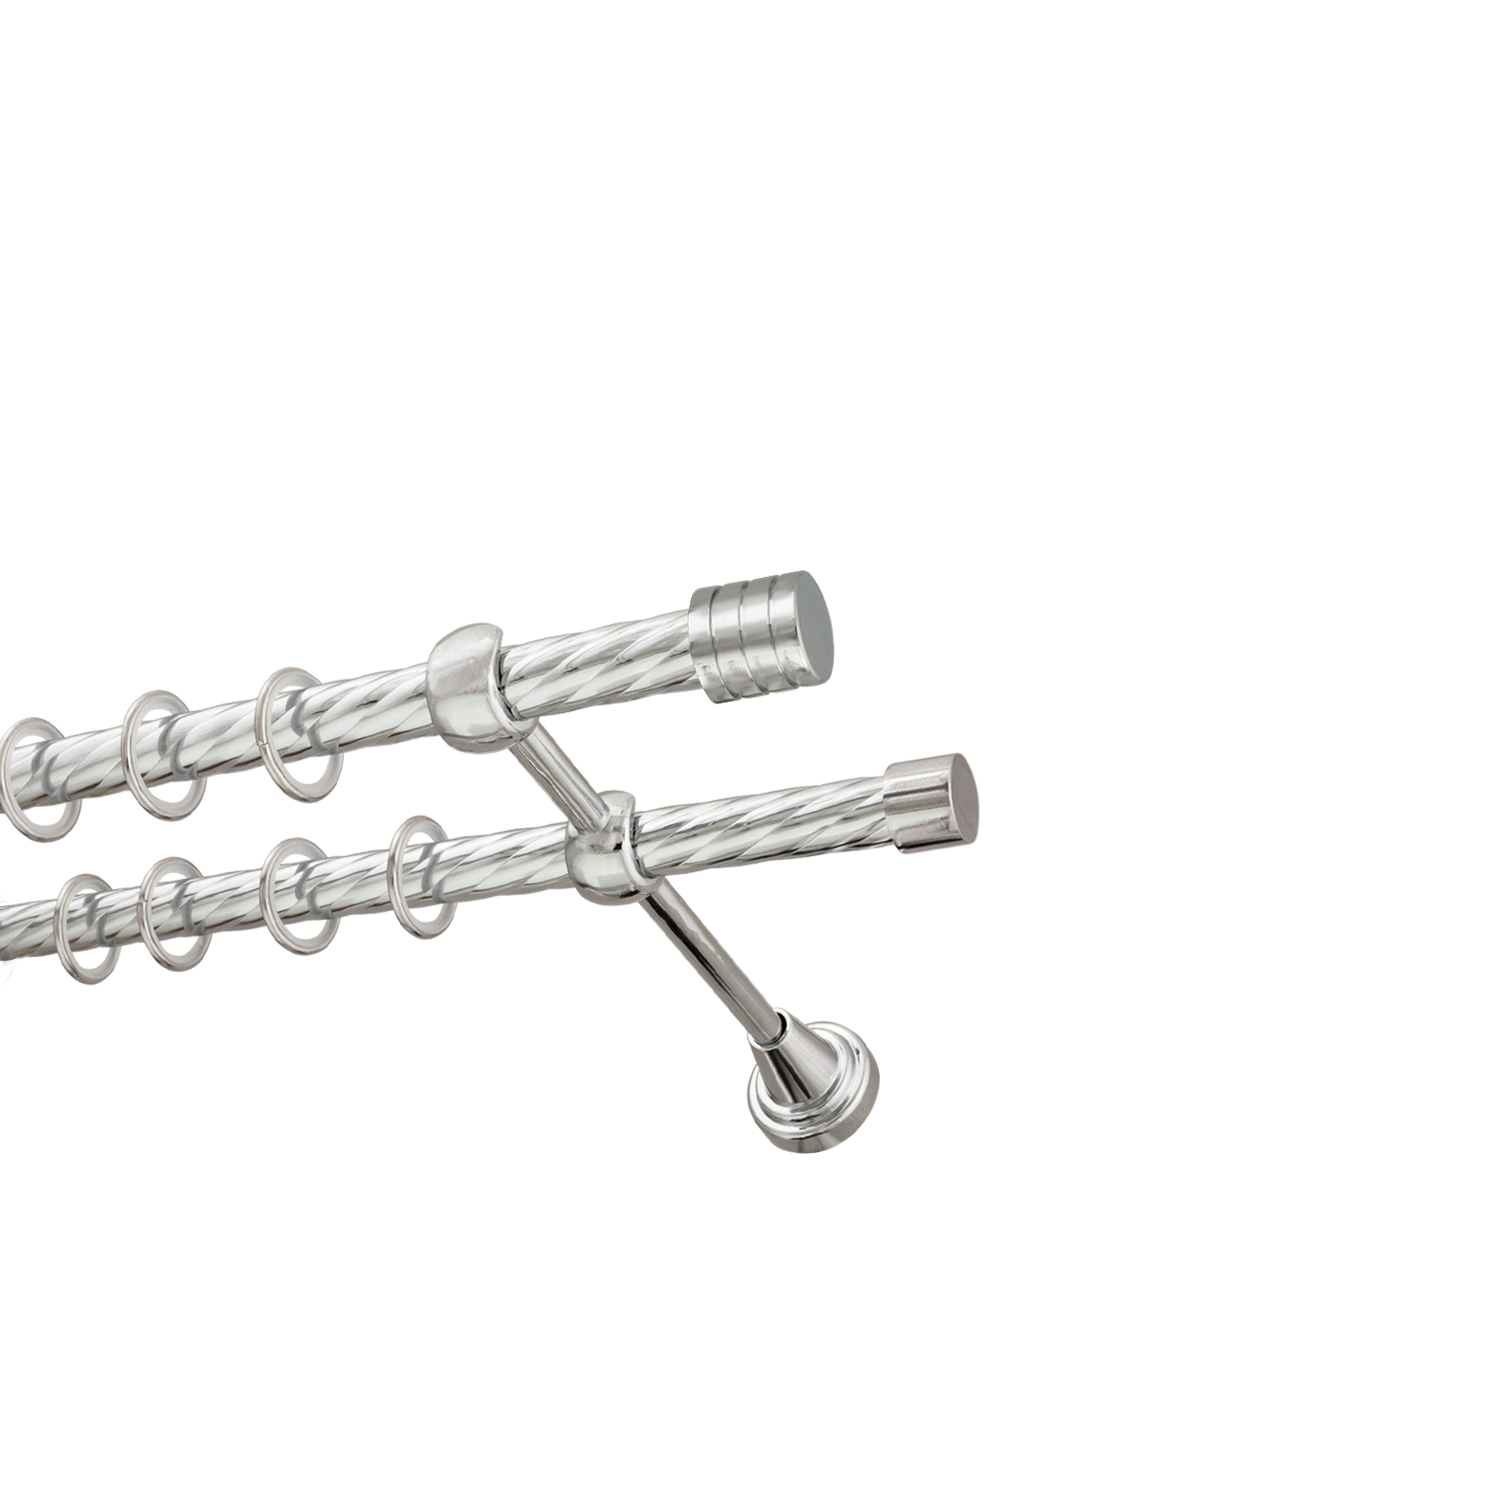 Металлический карниз для штор Подиум, двухрядный 16/16 мм, серебро, витая штанга, длина 300 см